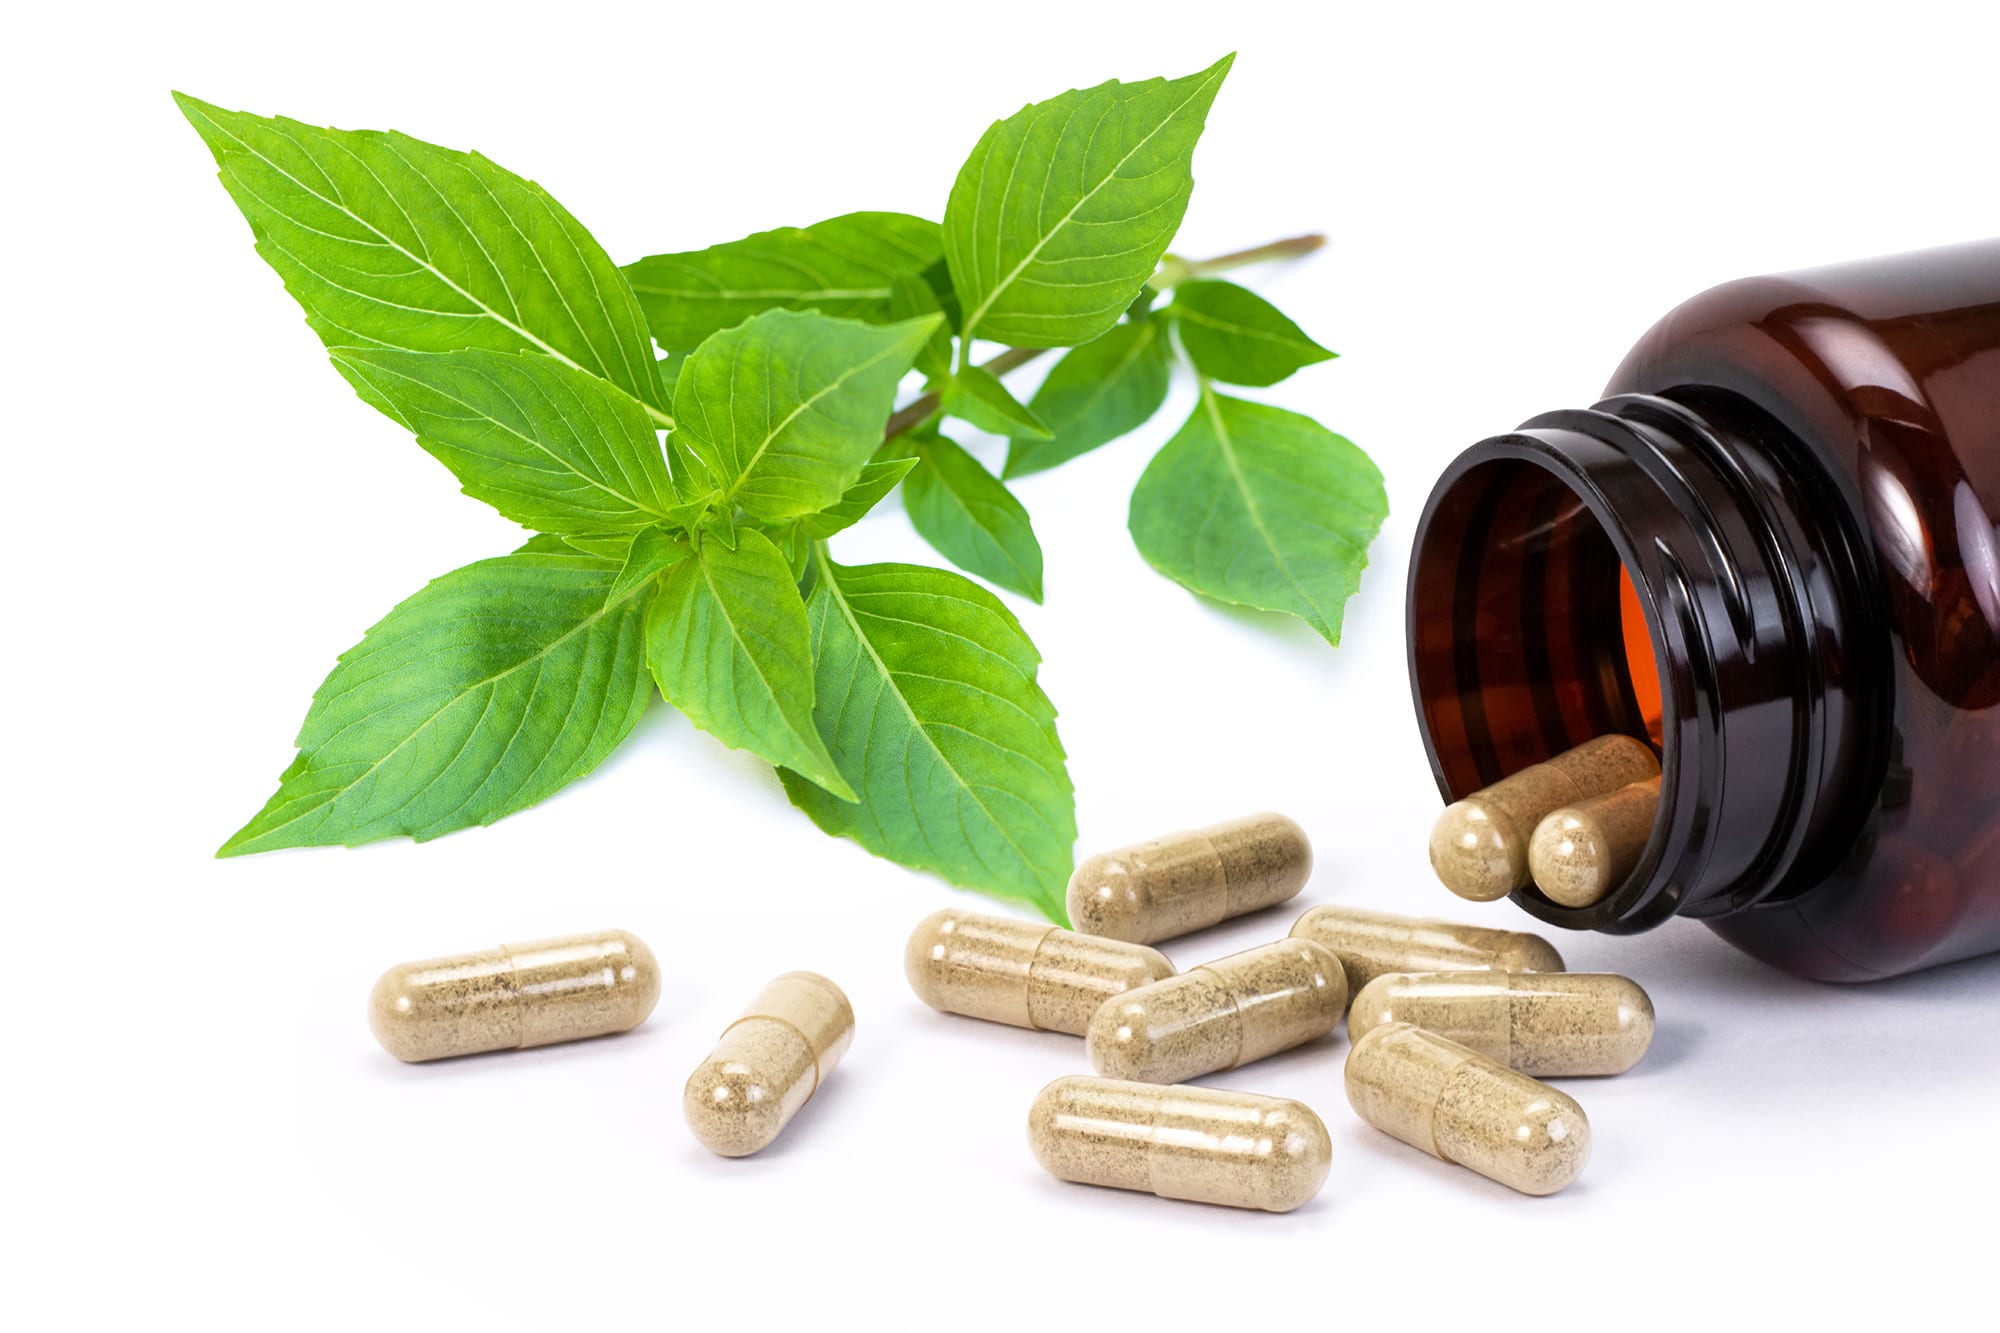 Herbal medications